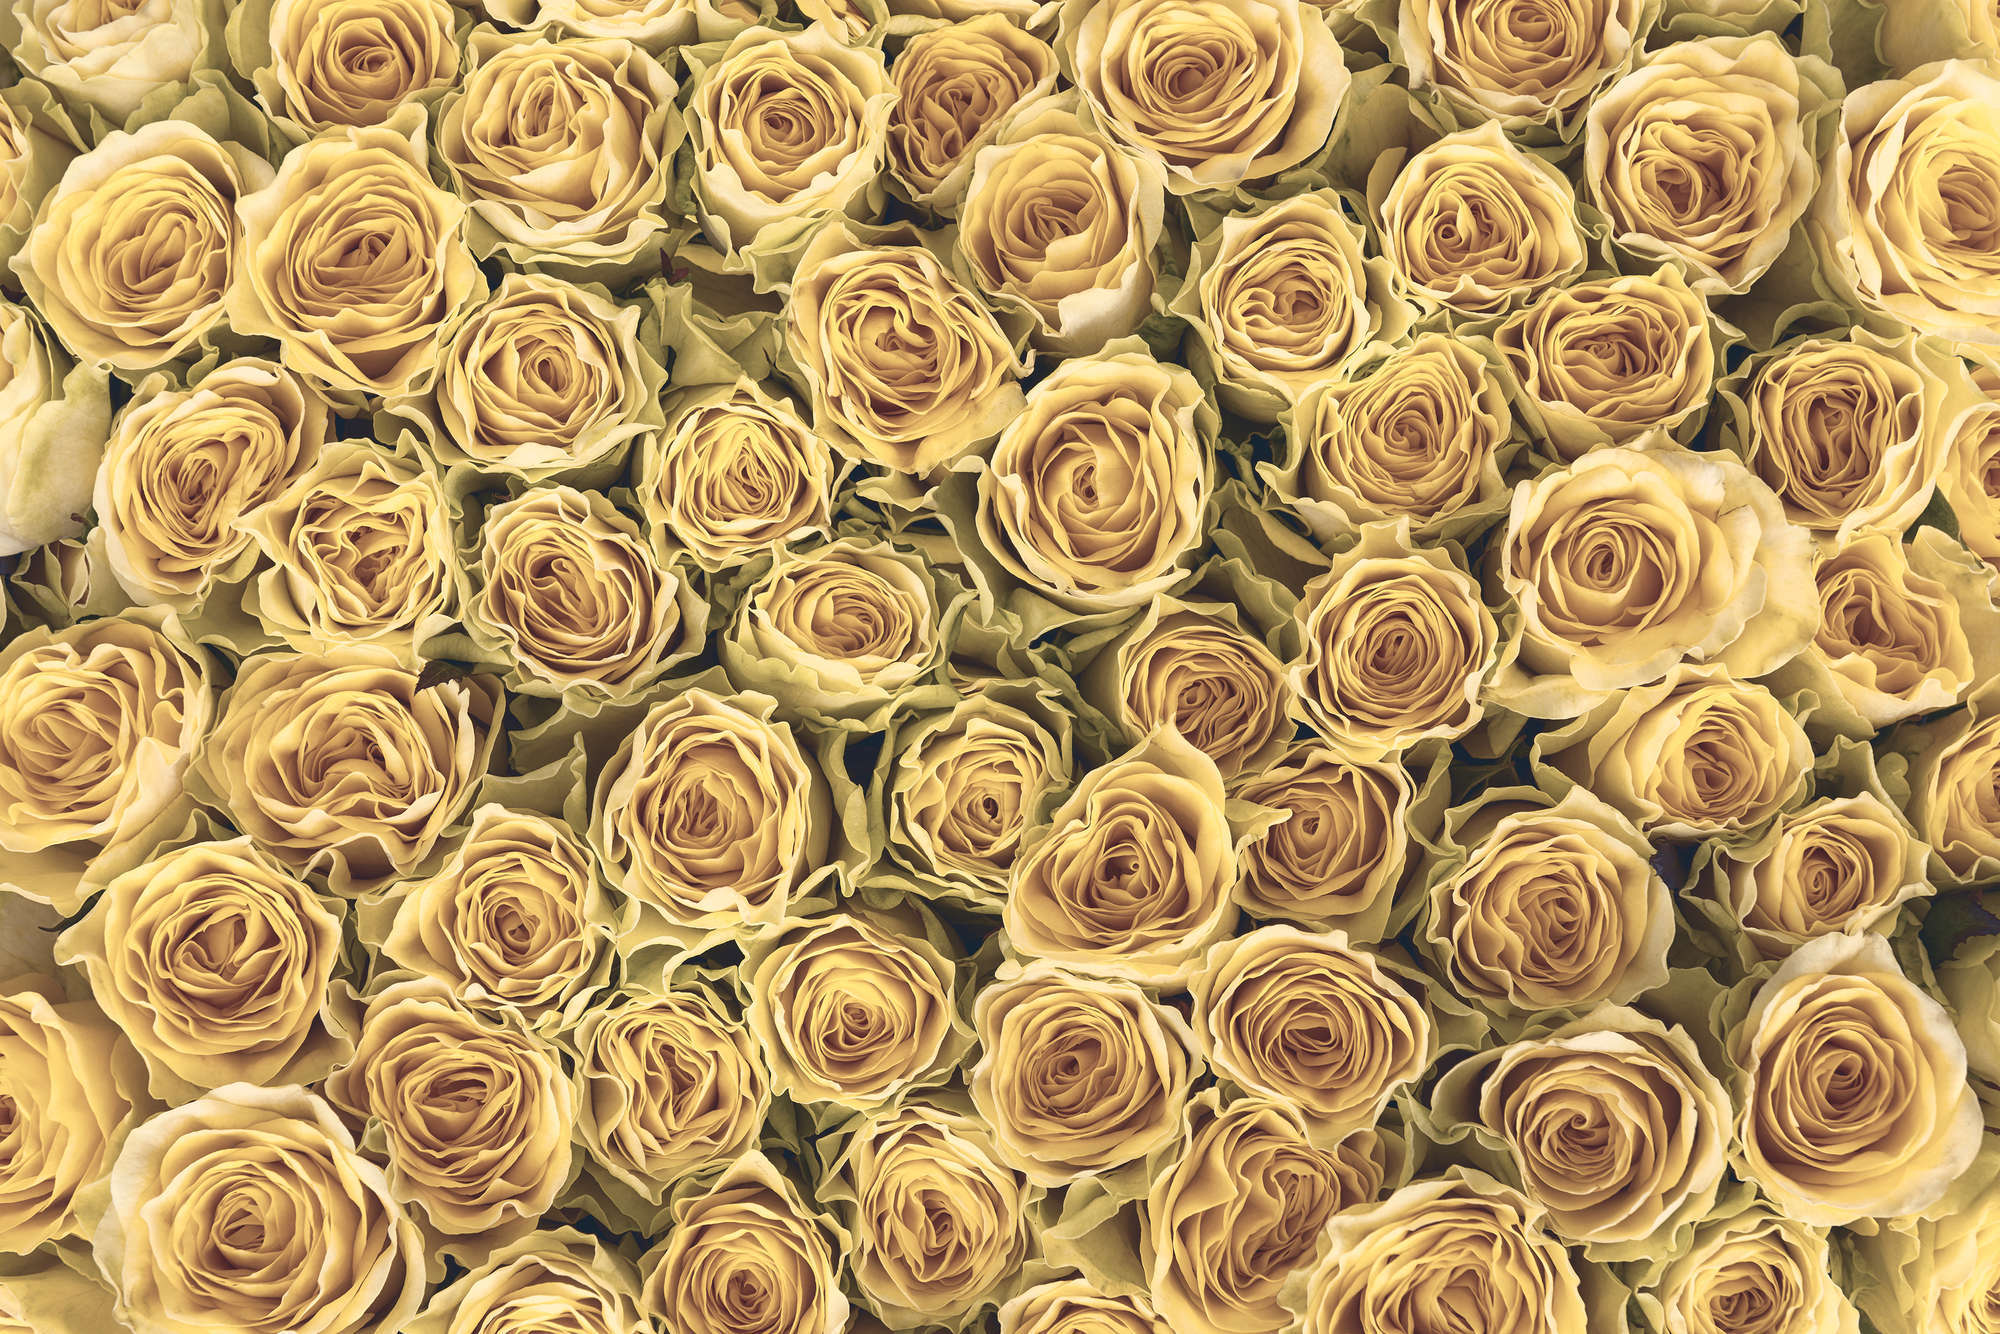             Papier peint végétal Roses dorées sur intissé lisse mat
        